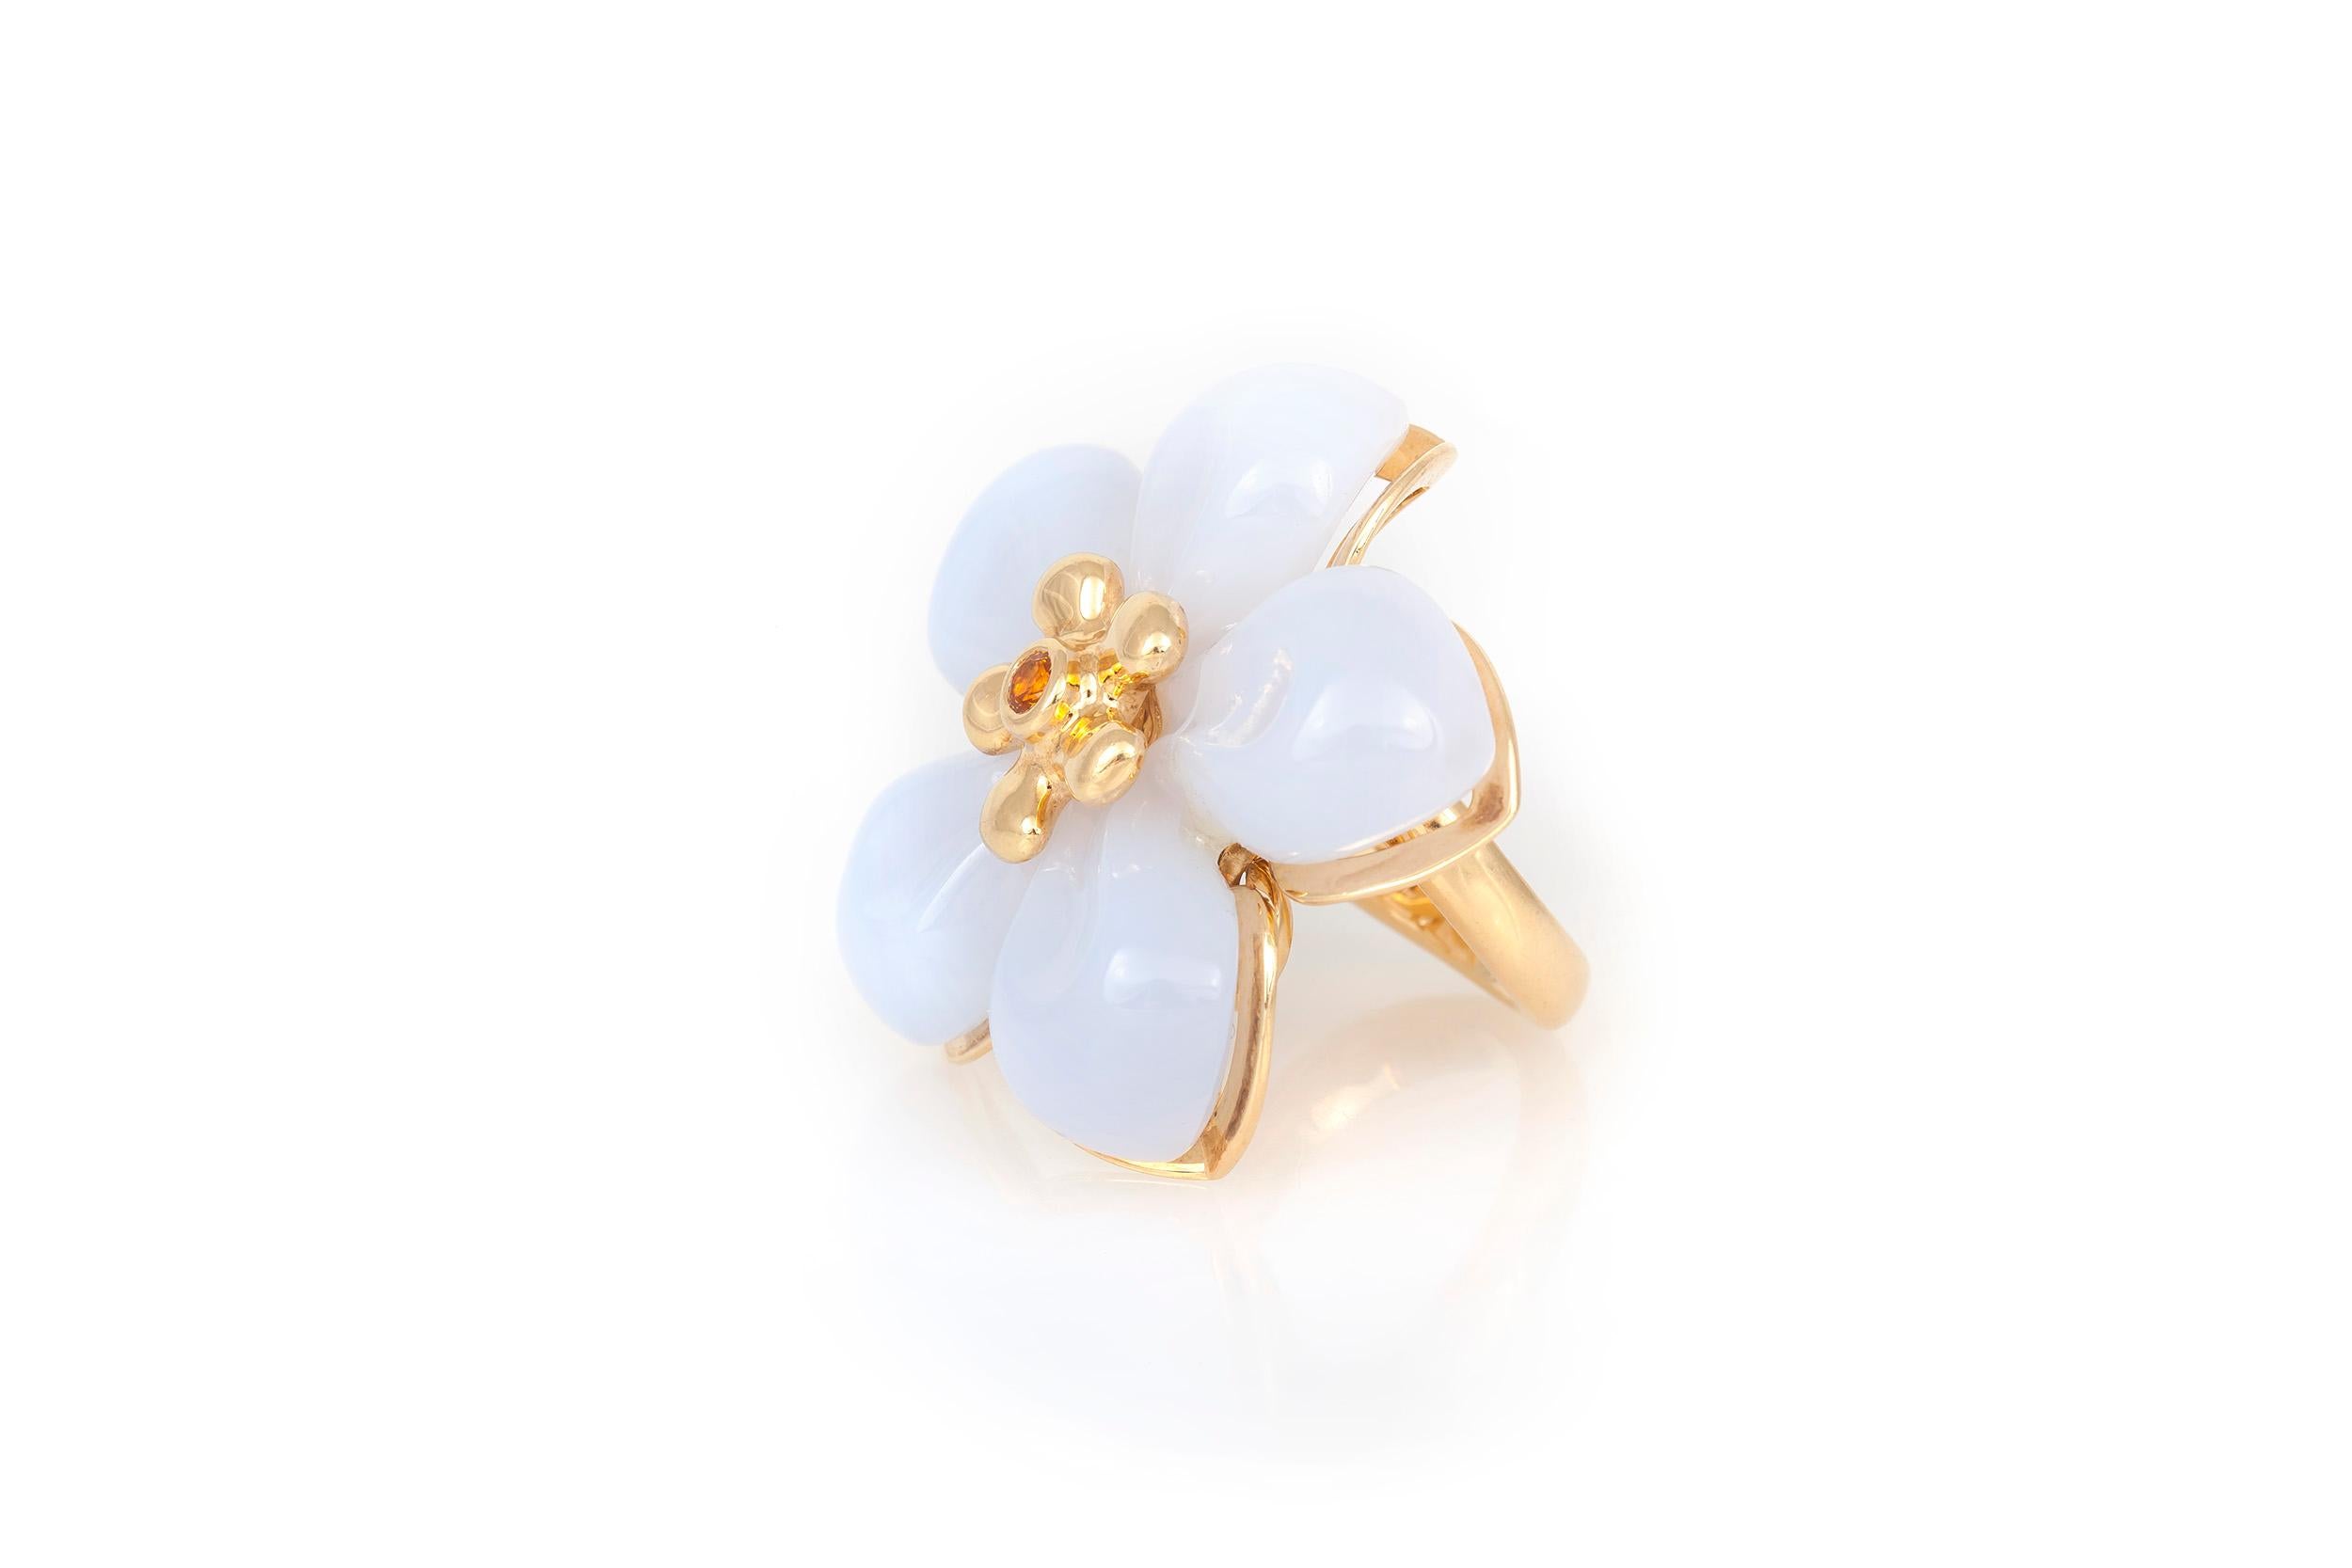 Der stilvolle Dior-Ring besteht aus 18 Karat Gelbgold und weißer Jade als Blütenblätter mit einem charmanten gelben Saphir in der Mitte. Ringgröße 6.